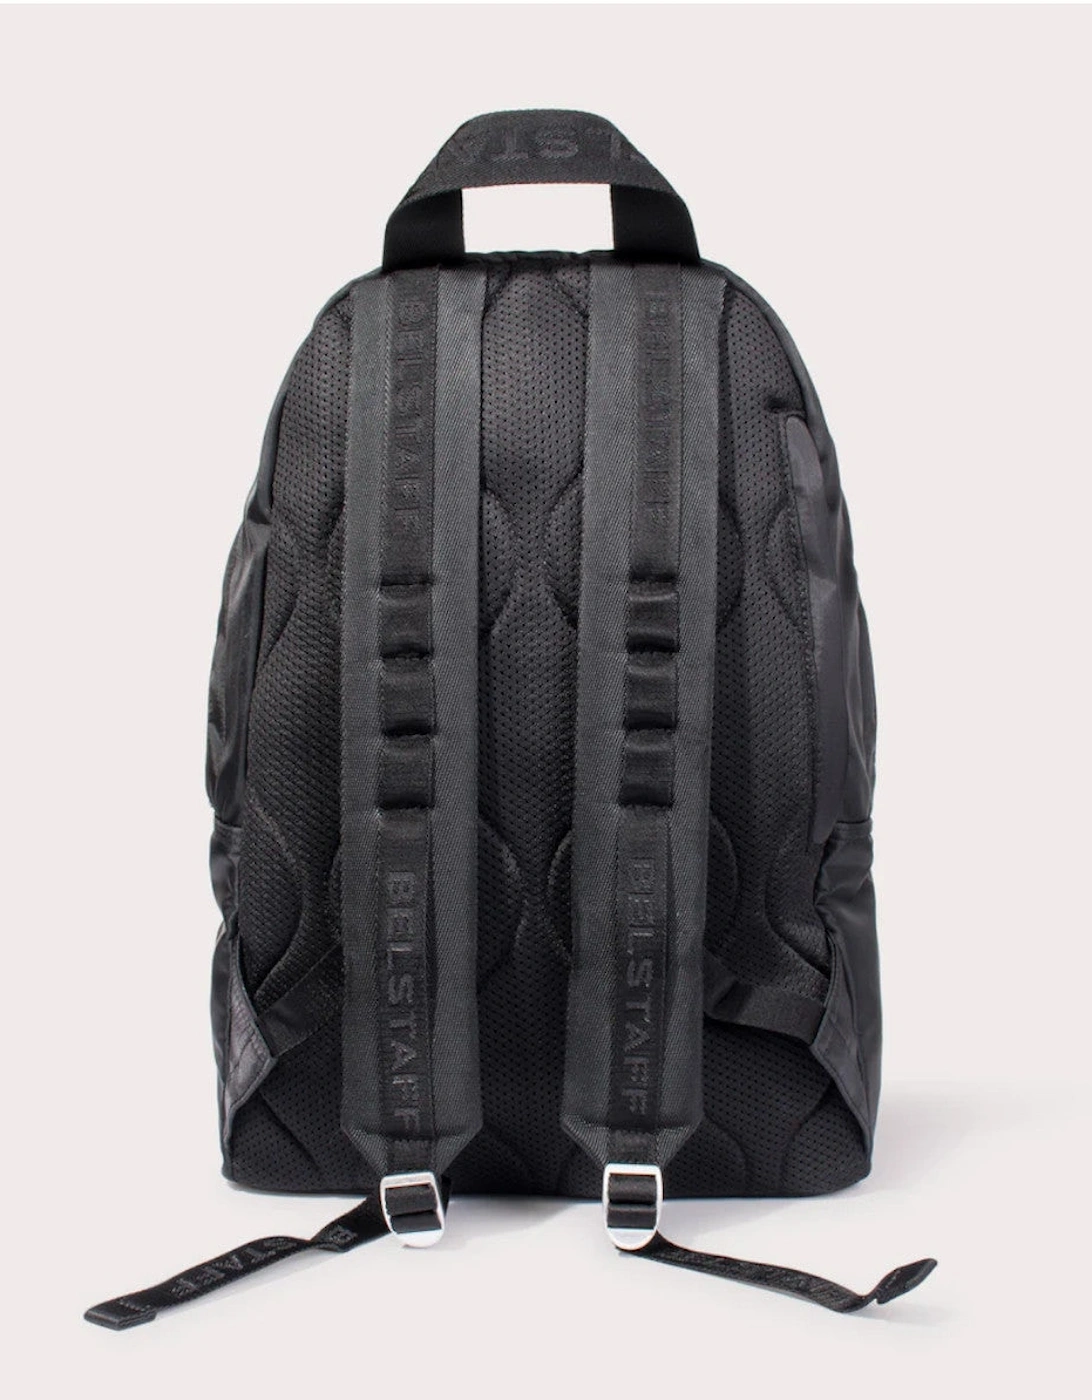 Urban Backpack Black